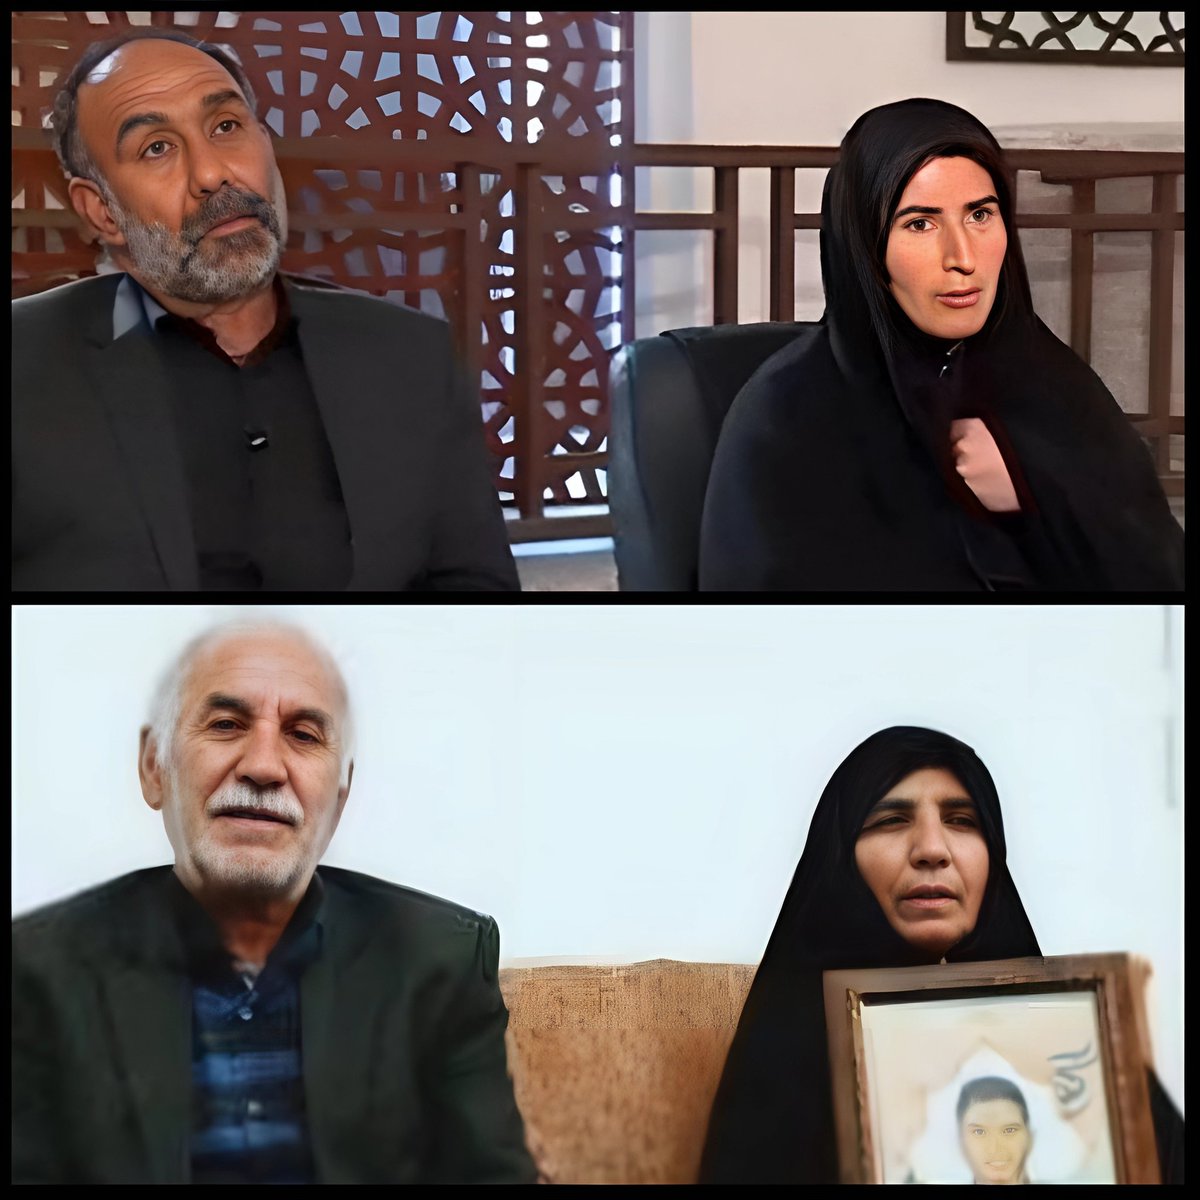 کثیف‌ترین، کاسب‌ترین و بی‌شریف‌ترین پدر و مادرهای سال:
#کاسبان_خون
#MAHSA_AMINI
#IRGCterrorists